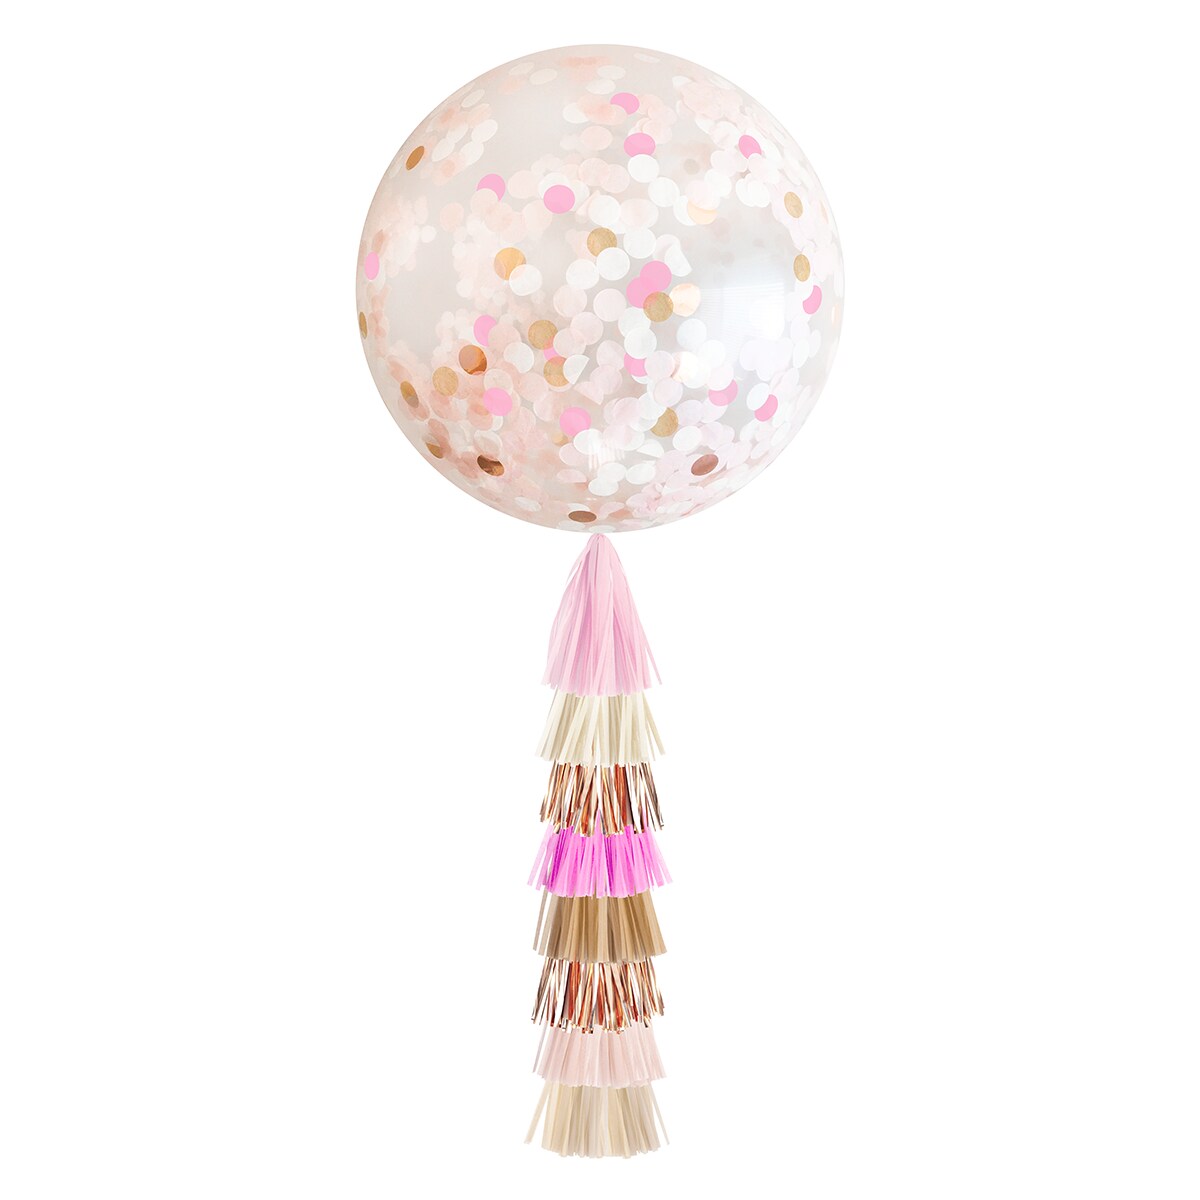 Jumbo Confetti Balloon &#x26; Tassel Tail - Rustic Blush